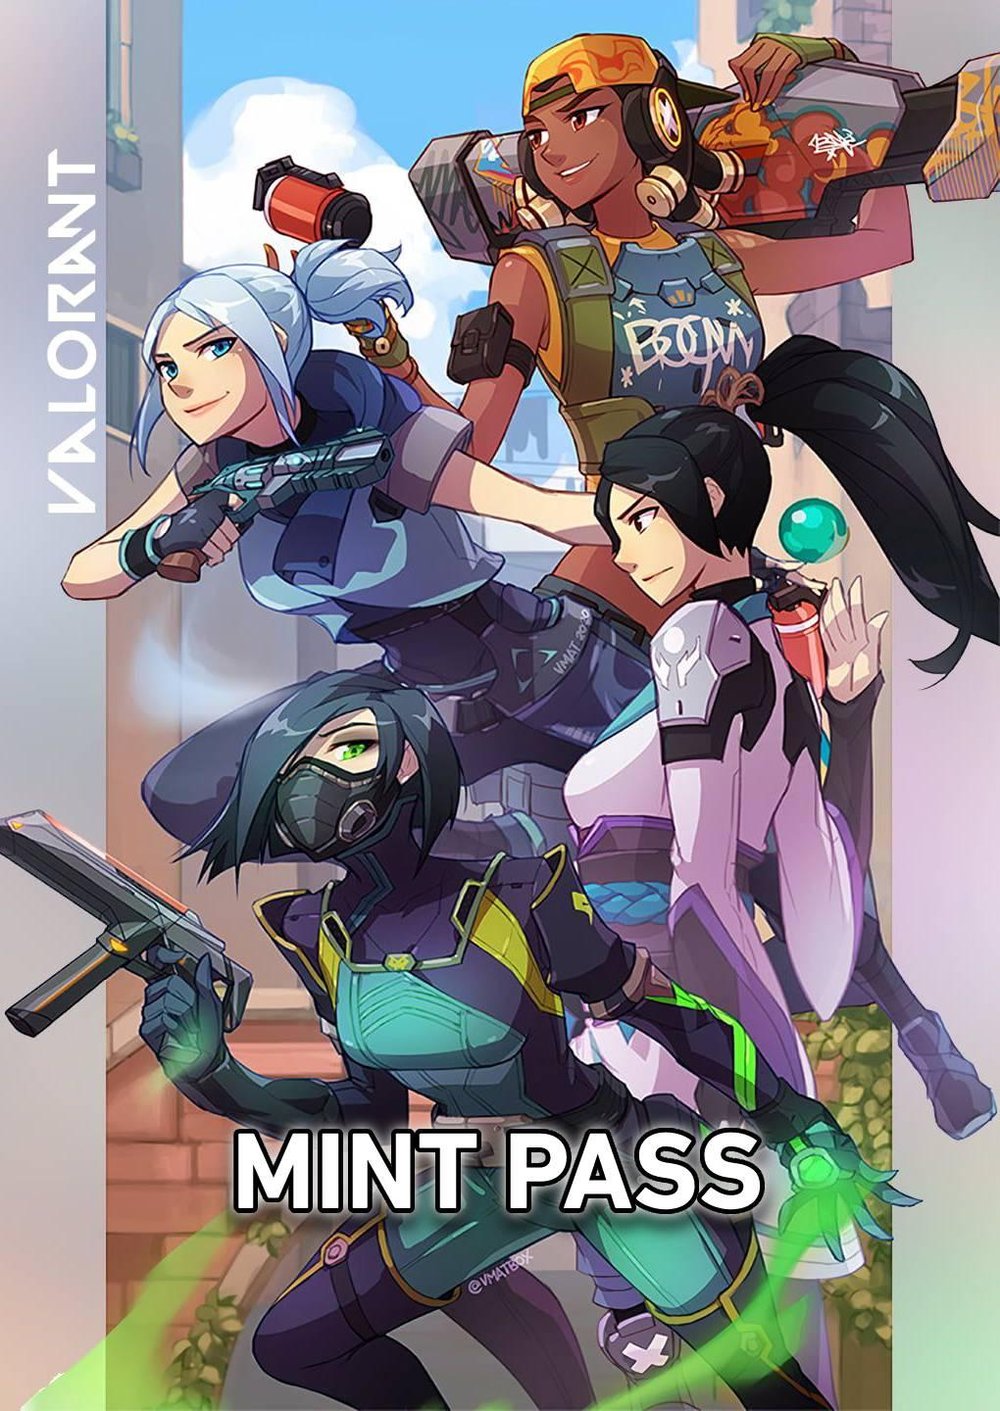 Mint Pass #443